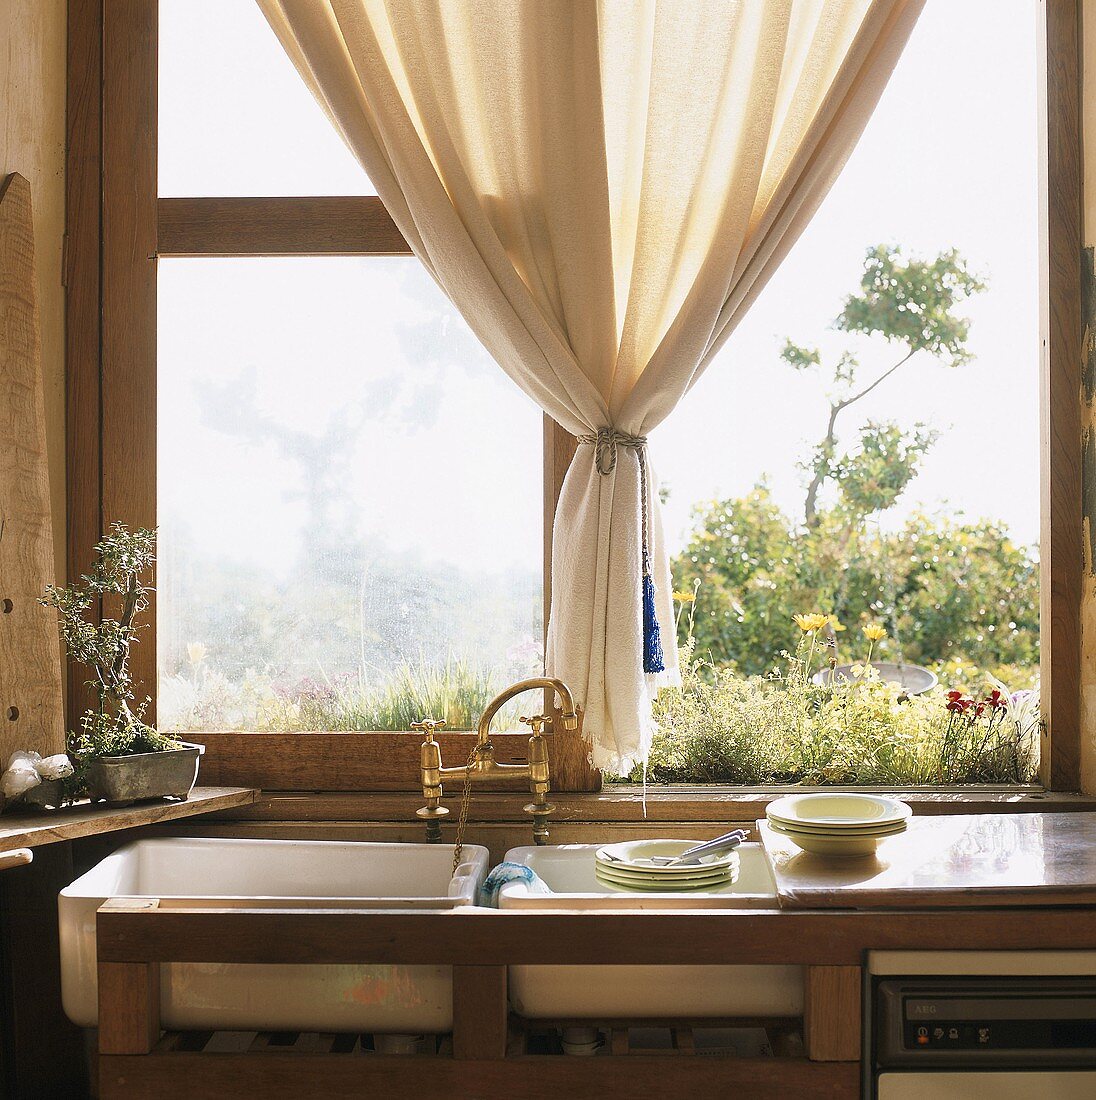 Spülbecken und Geschirr vor offenem Fenster